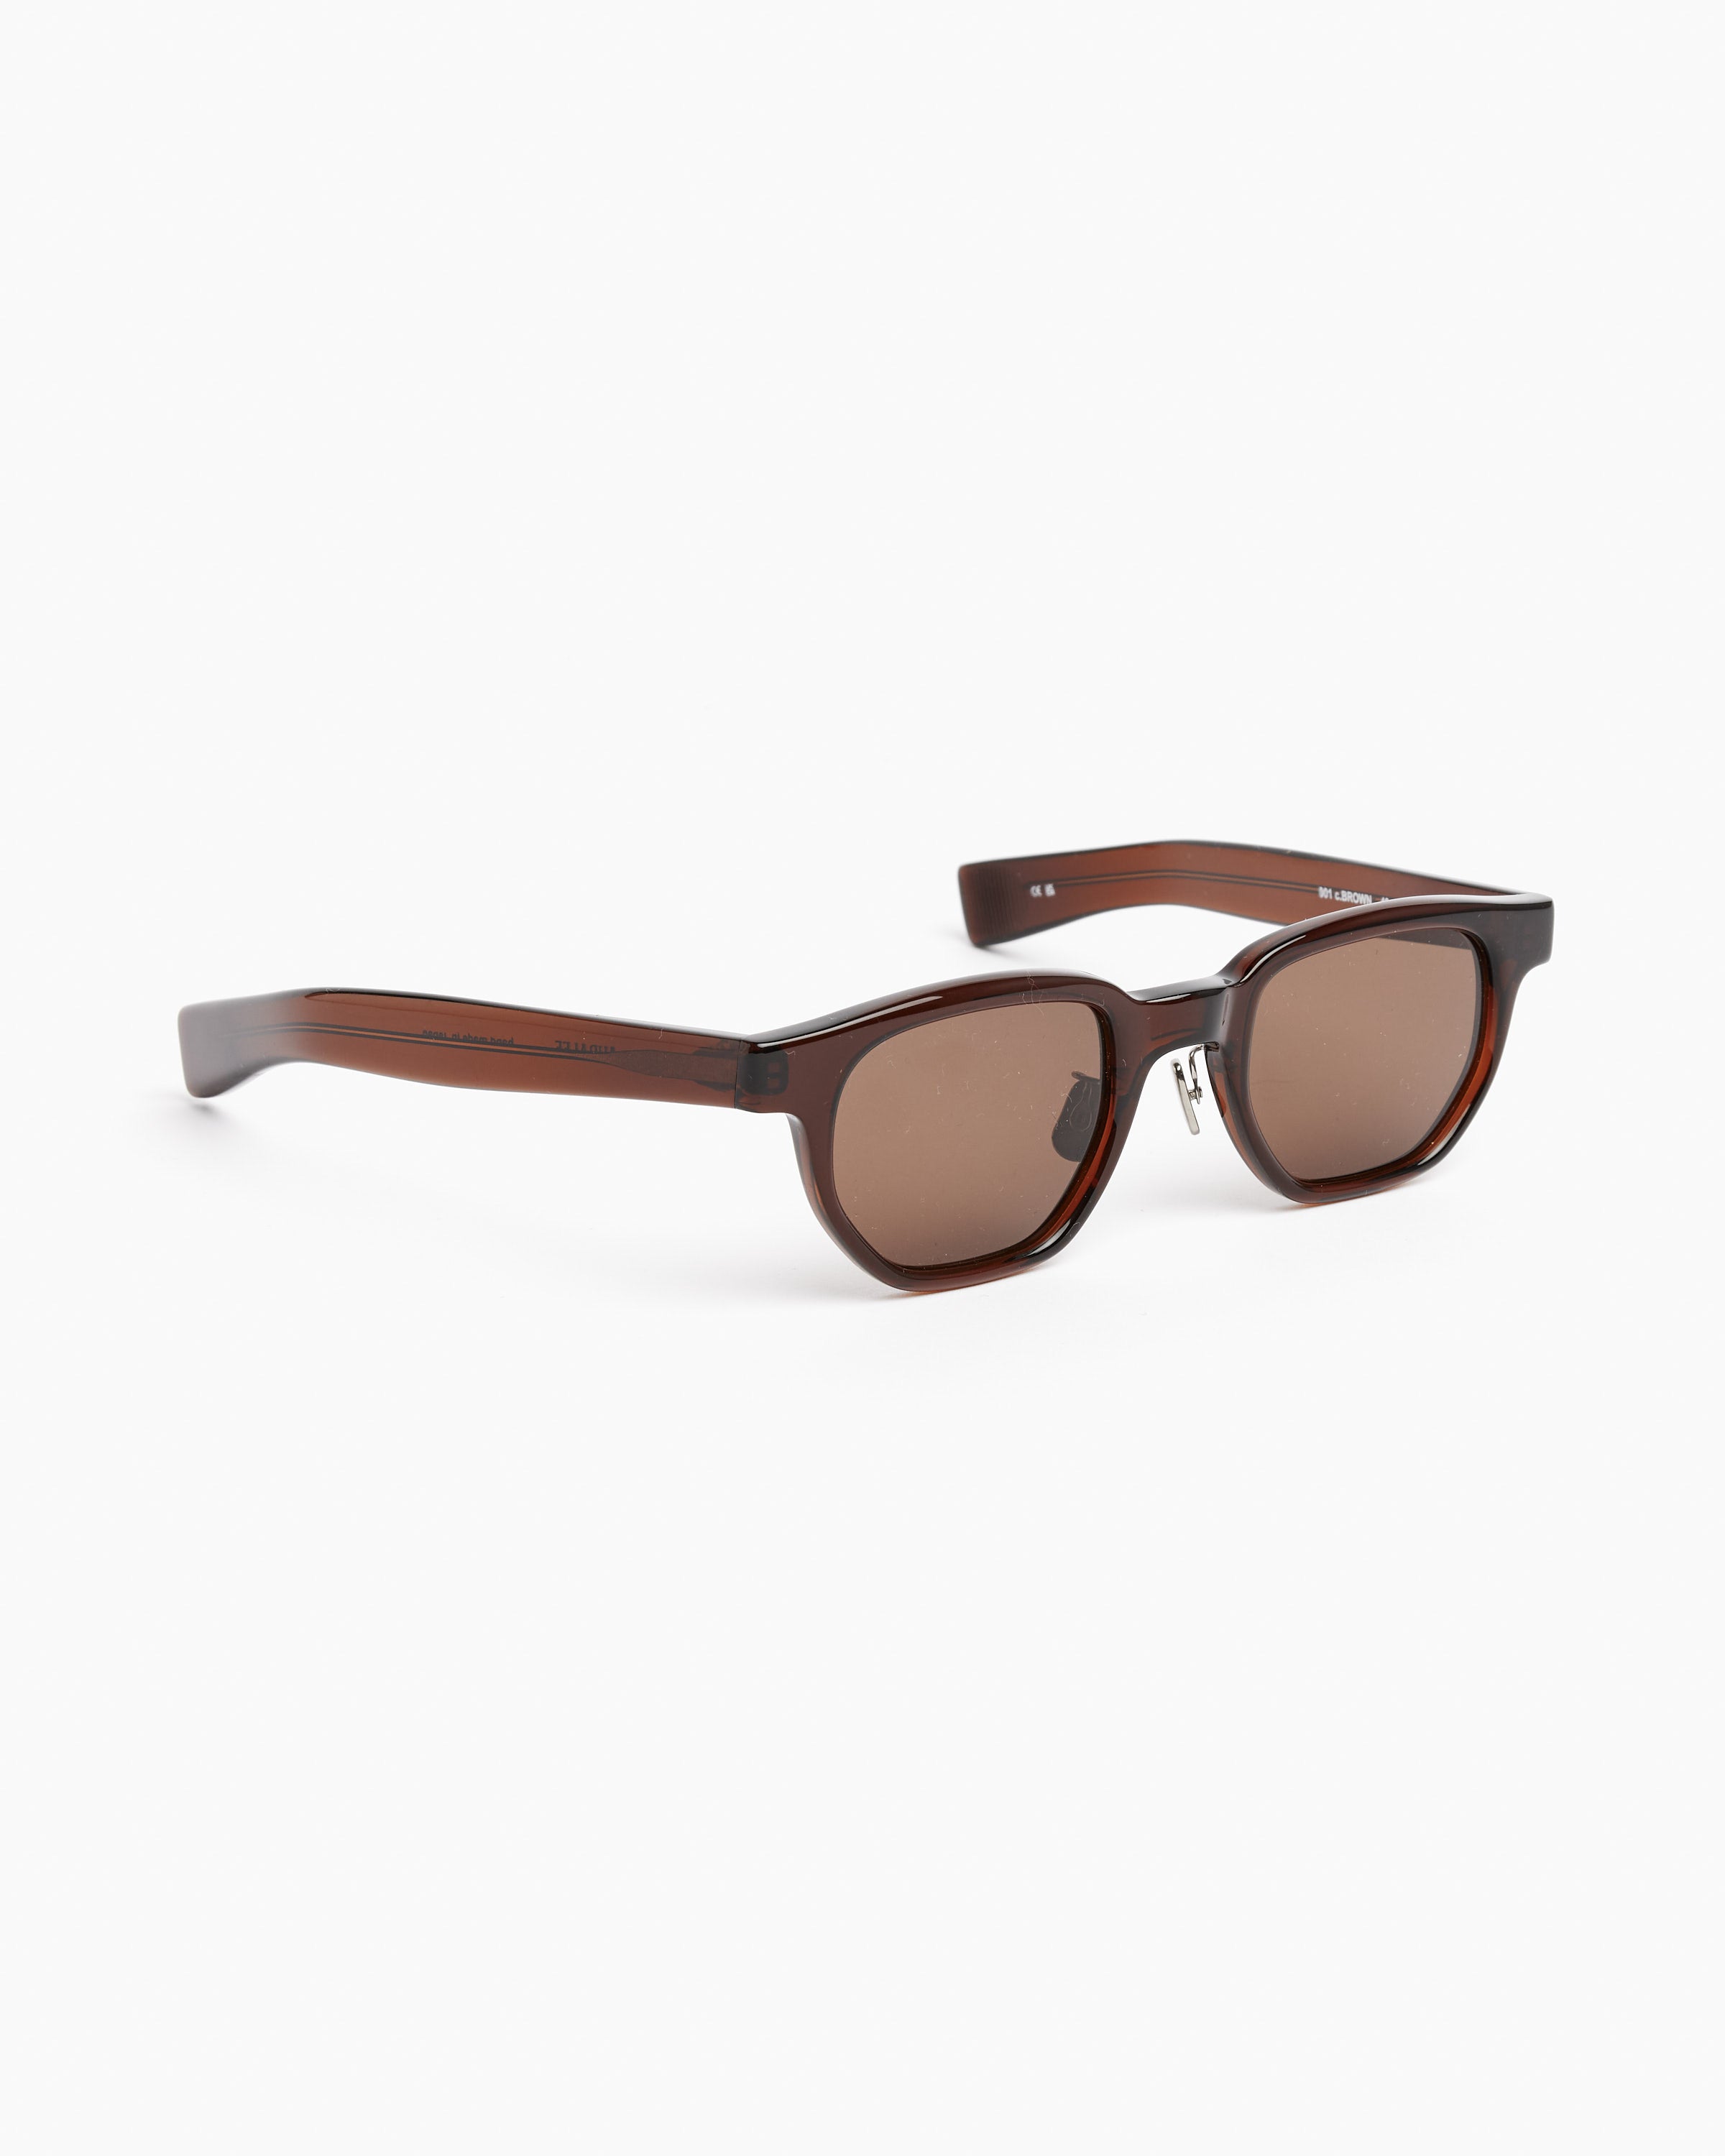 Auralee x Eyevan 7285 Sunglasses in Brown